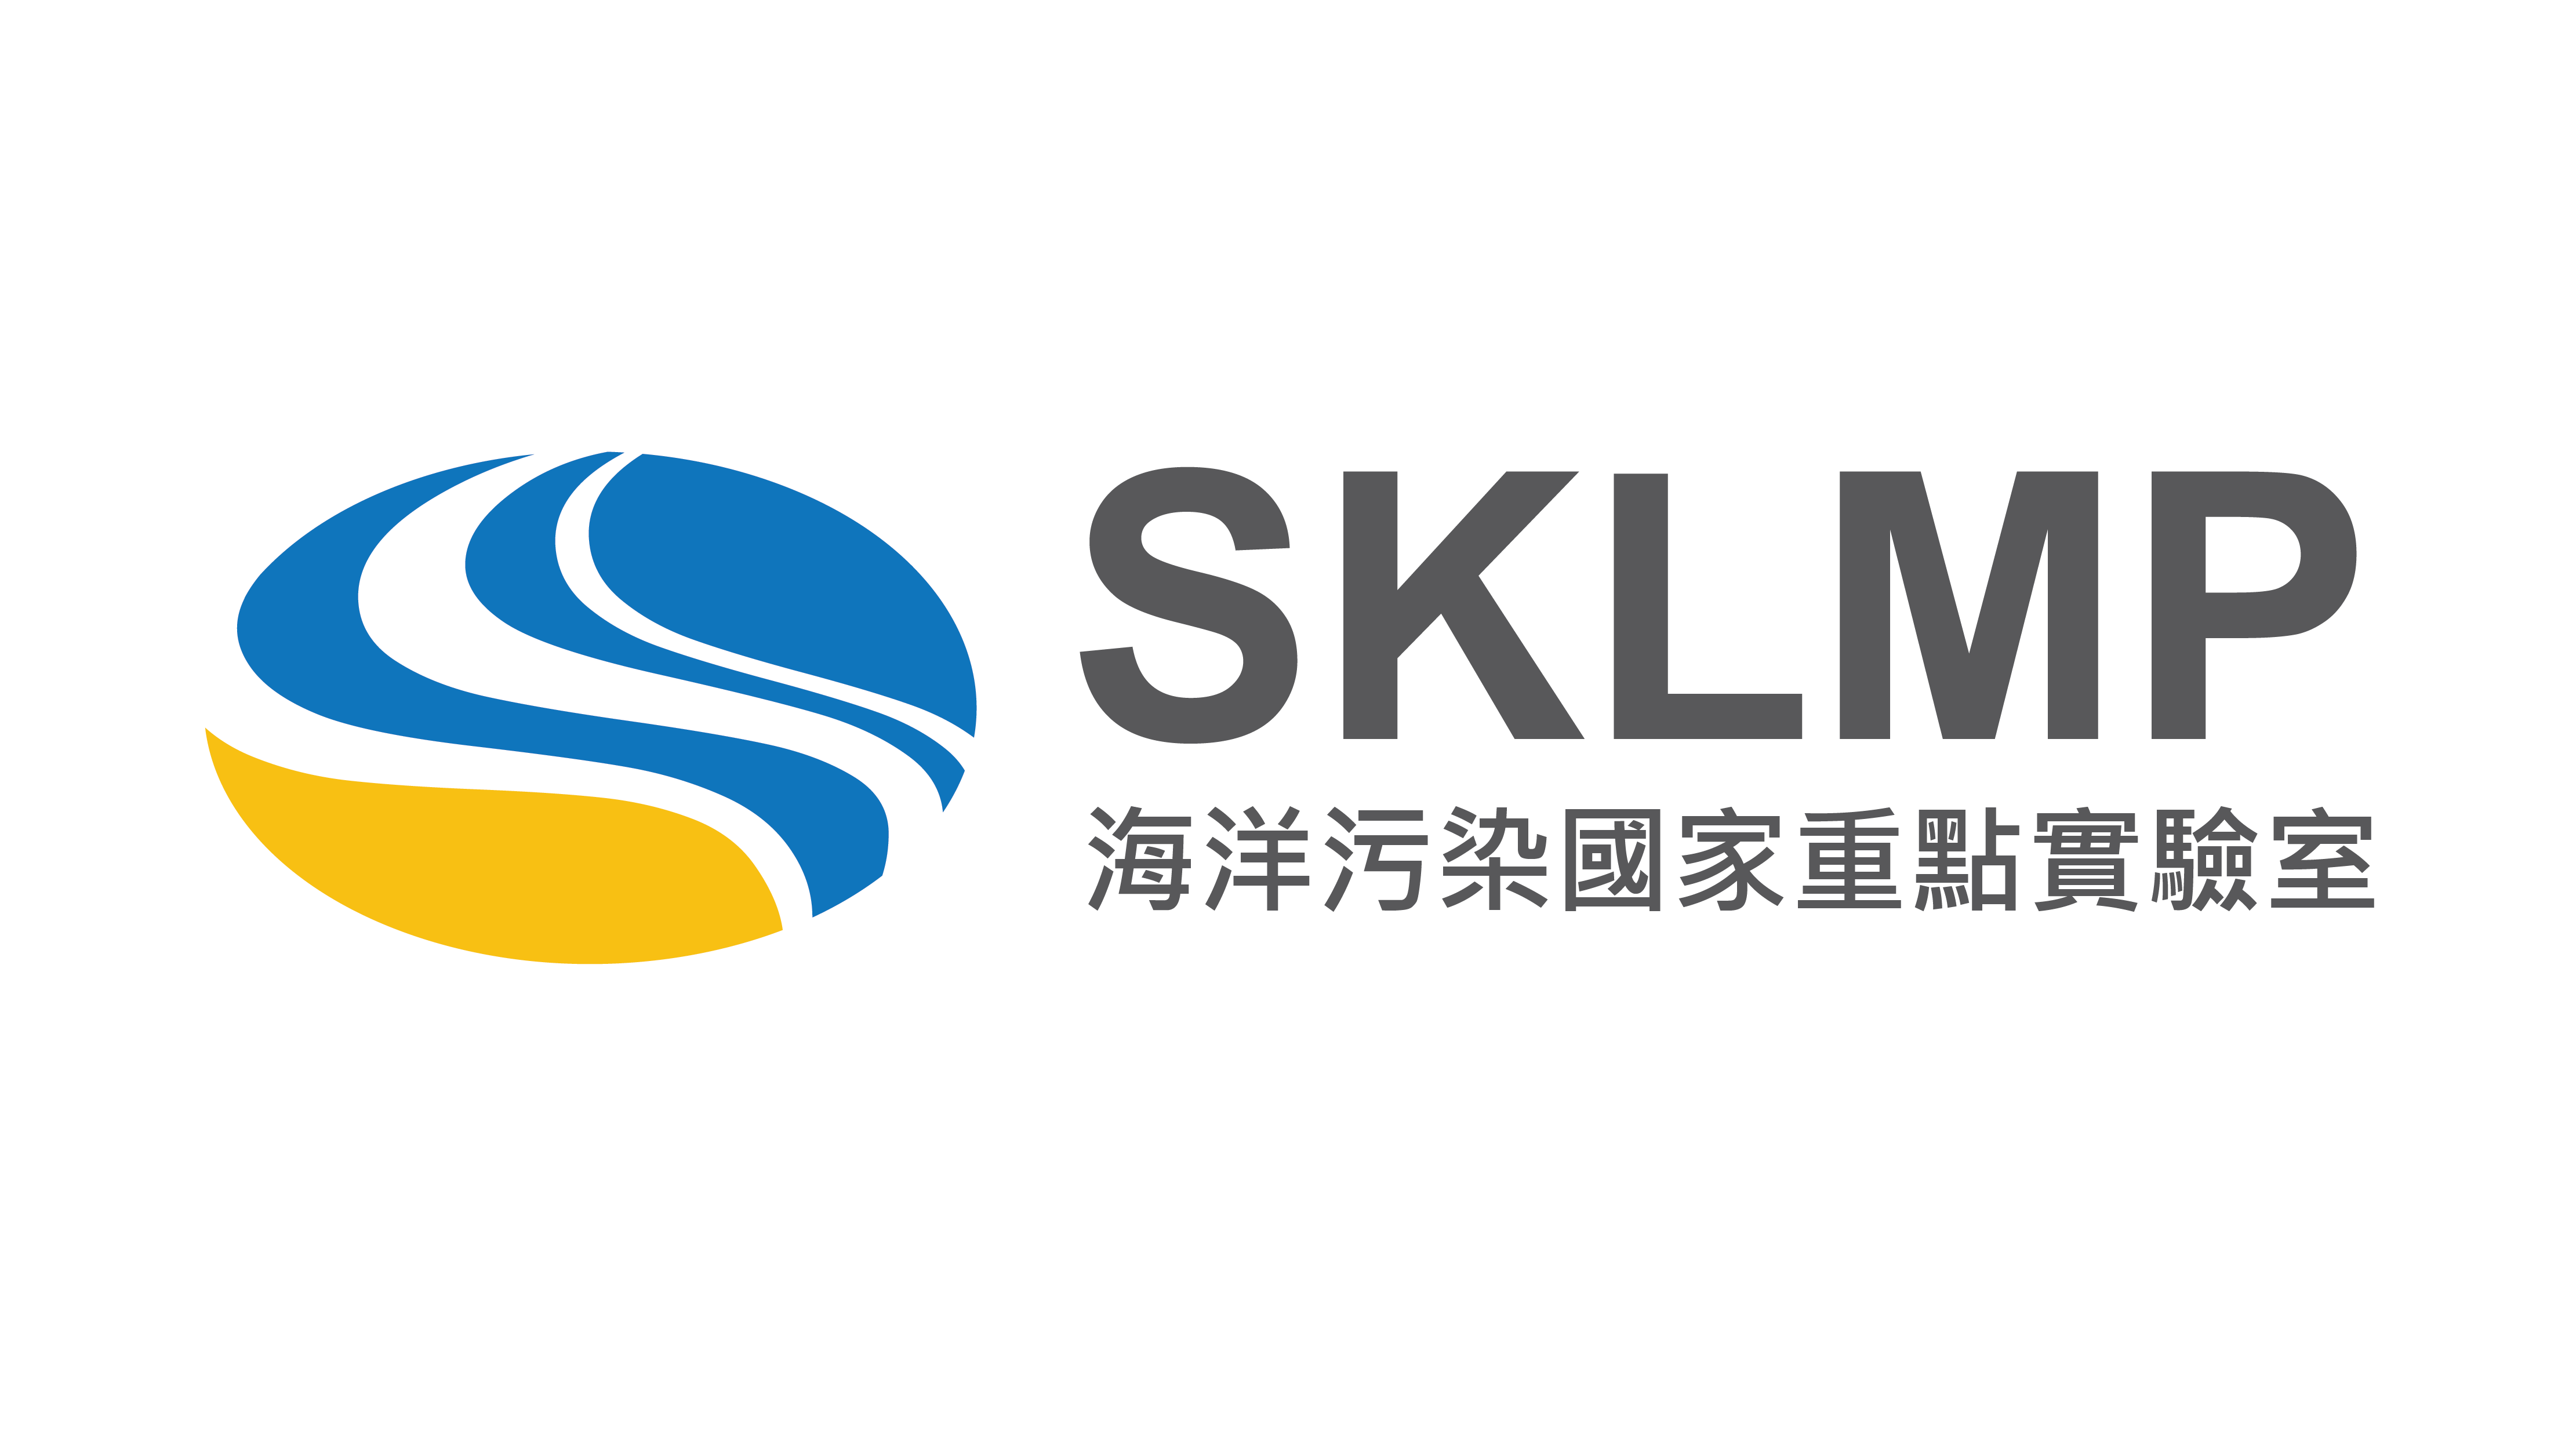 SKLMP new logo